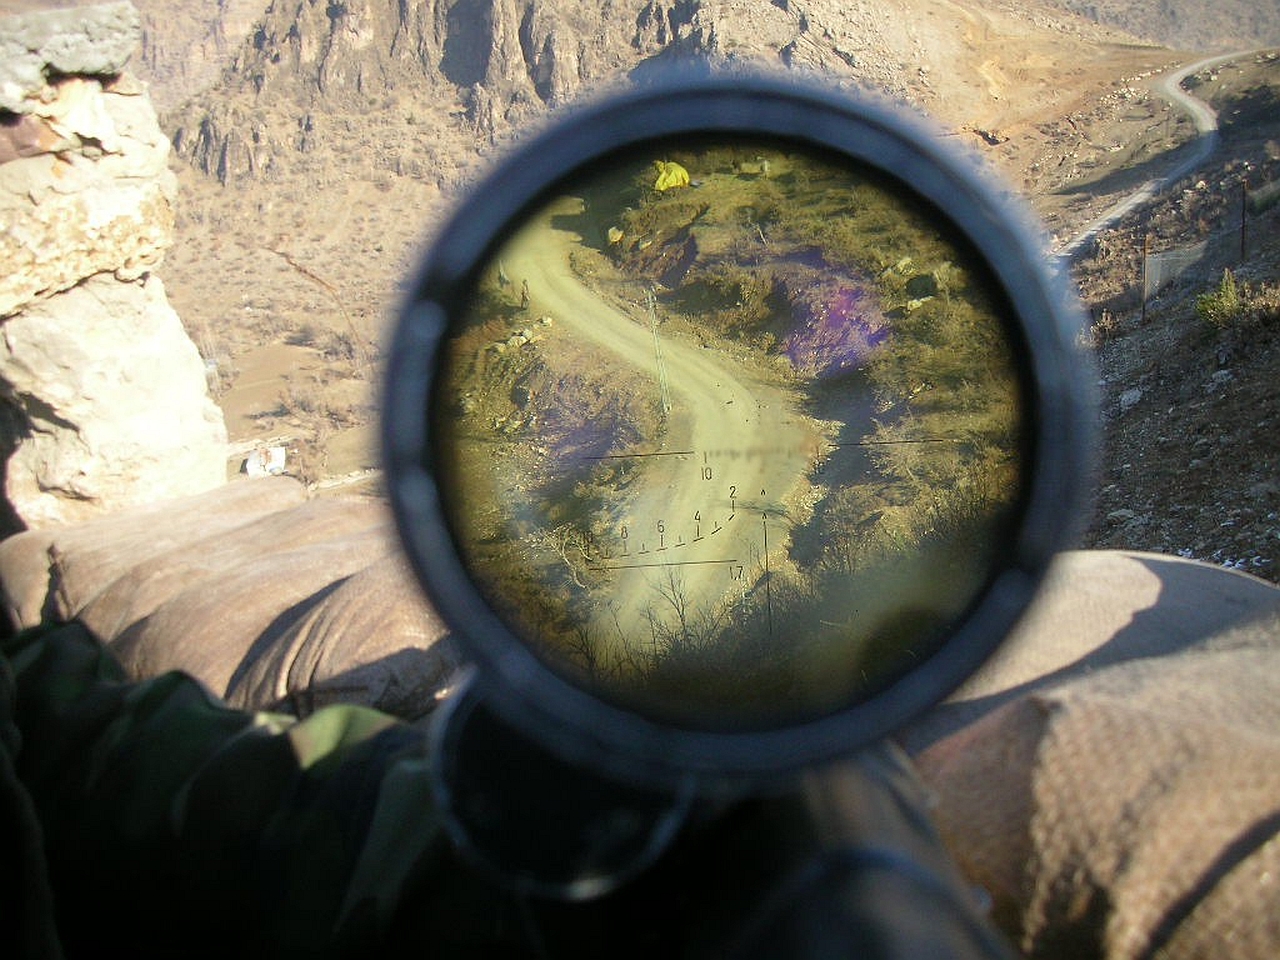 Sniper Rifle Picture